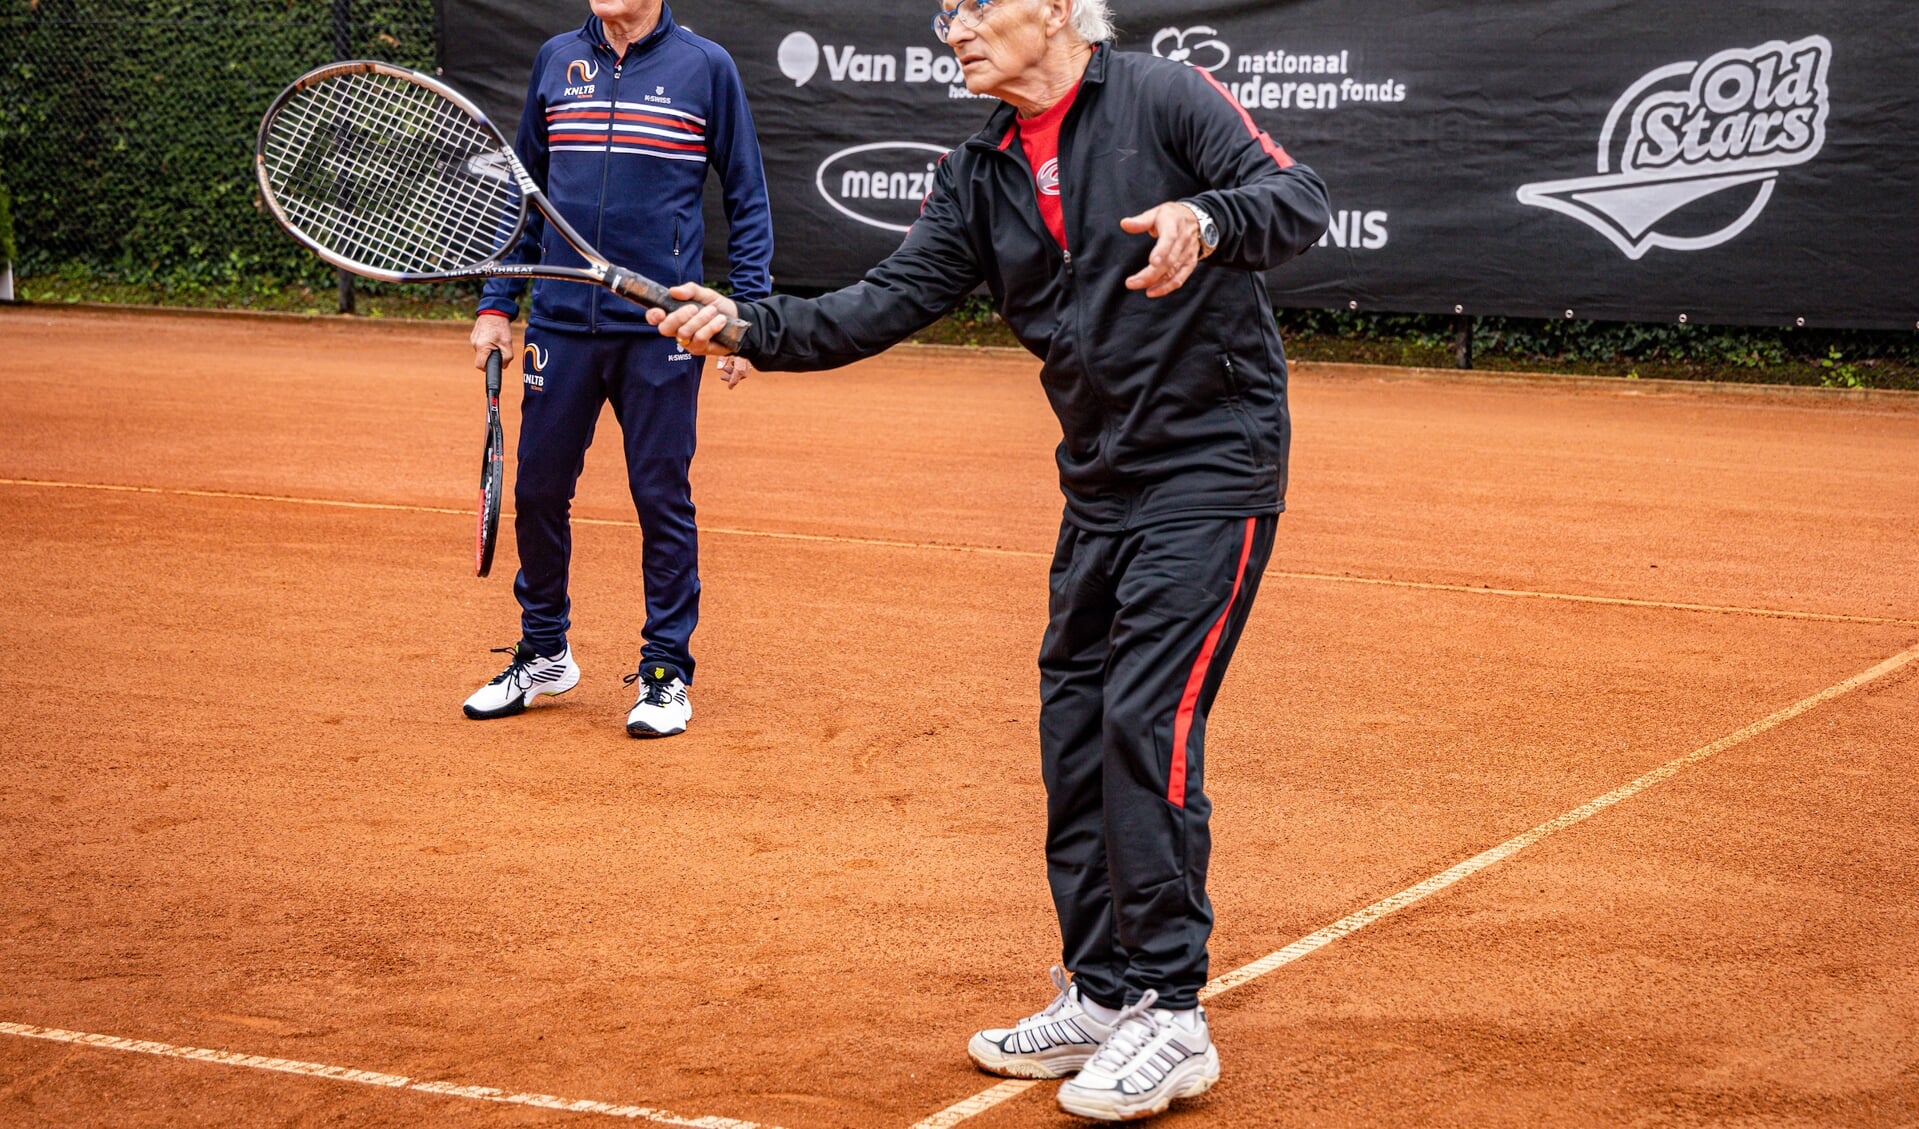 Het Old Stars Program, hier met onder meer oud-toptennisser Tom Okker (l.) als prominent gezicht. Foto: Tennisimages/Henk Koster